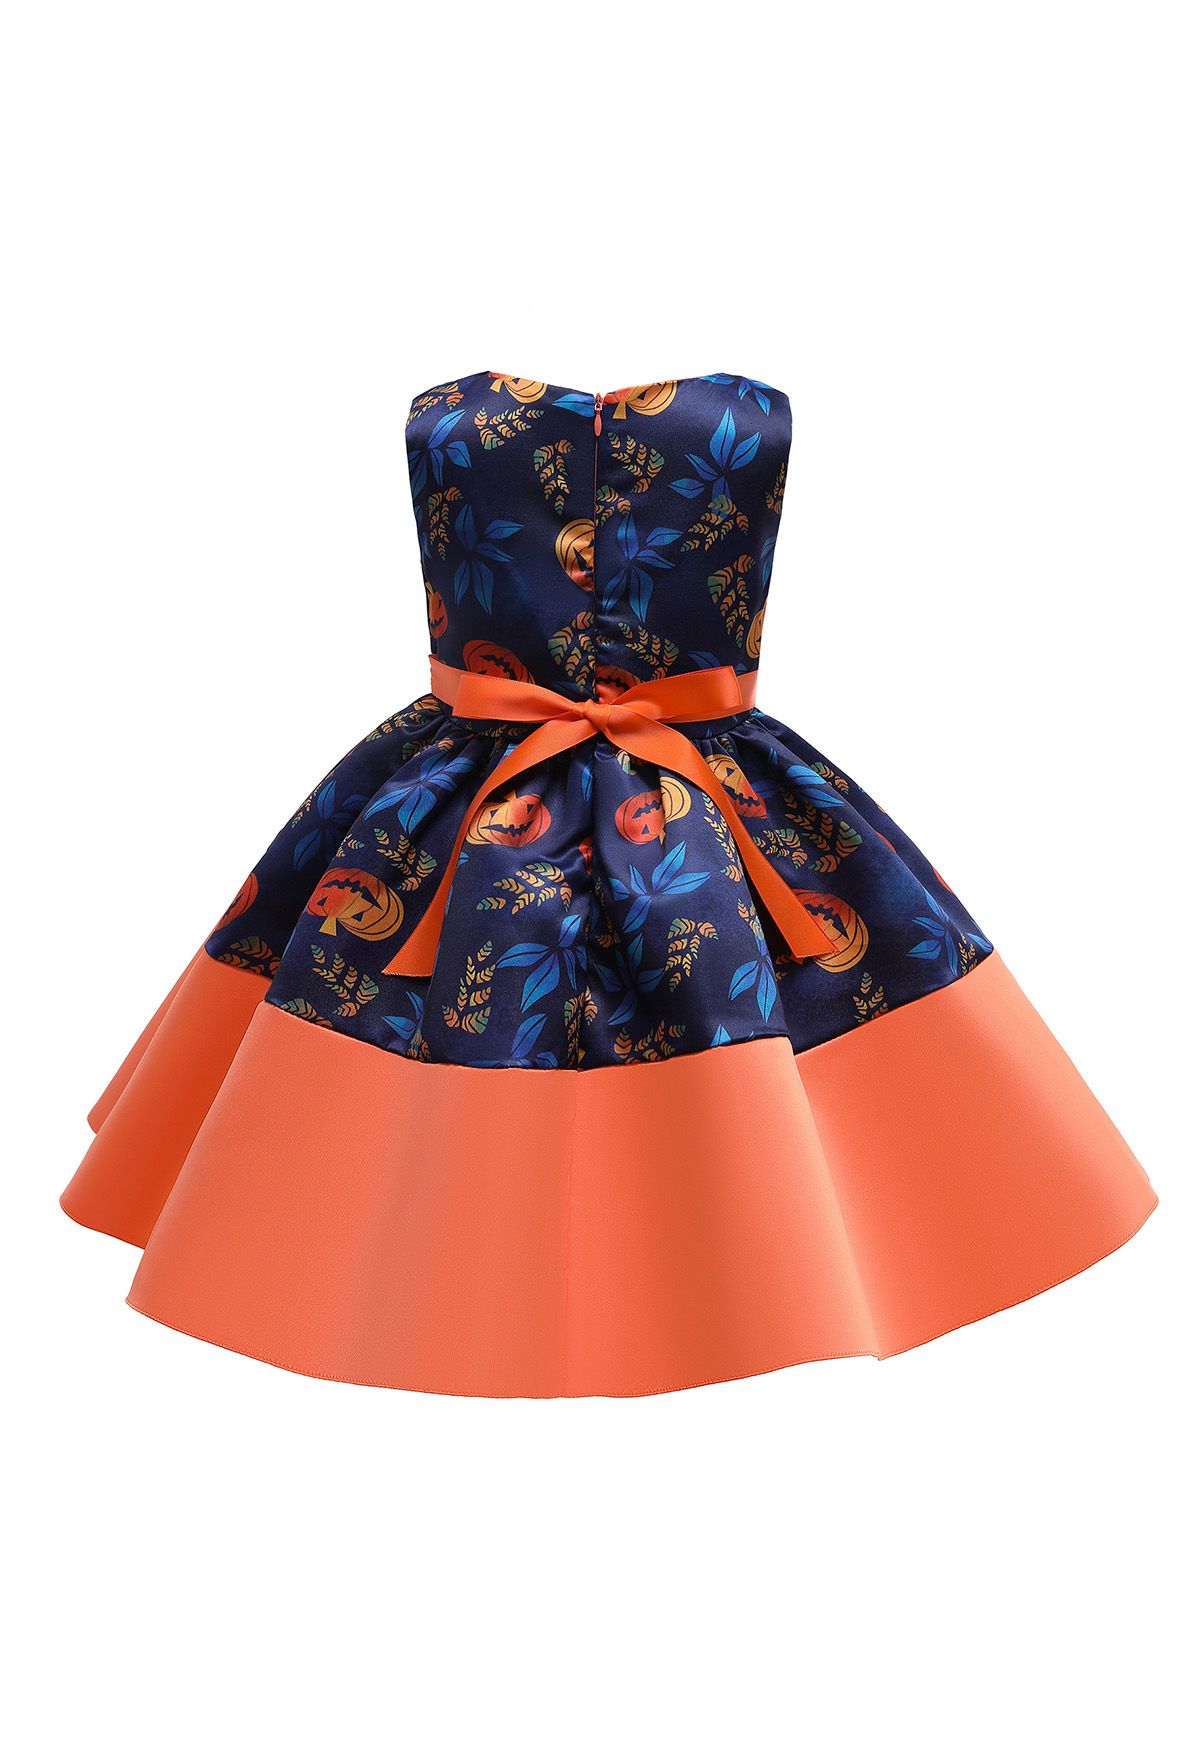 Pumpkin Lantern Bowknot Plissiertes Prinzessinnenkleid für Kinder